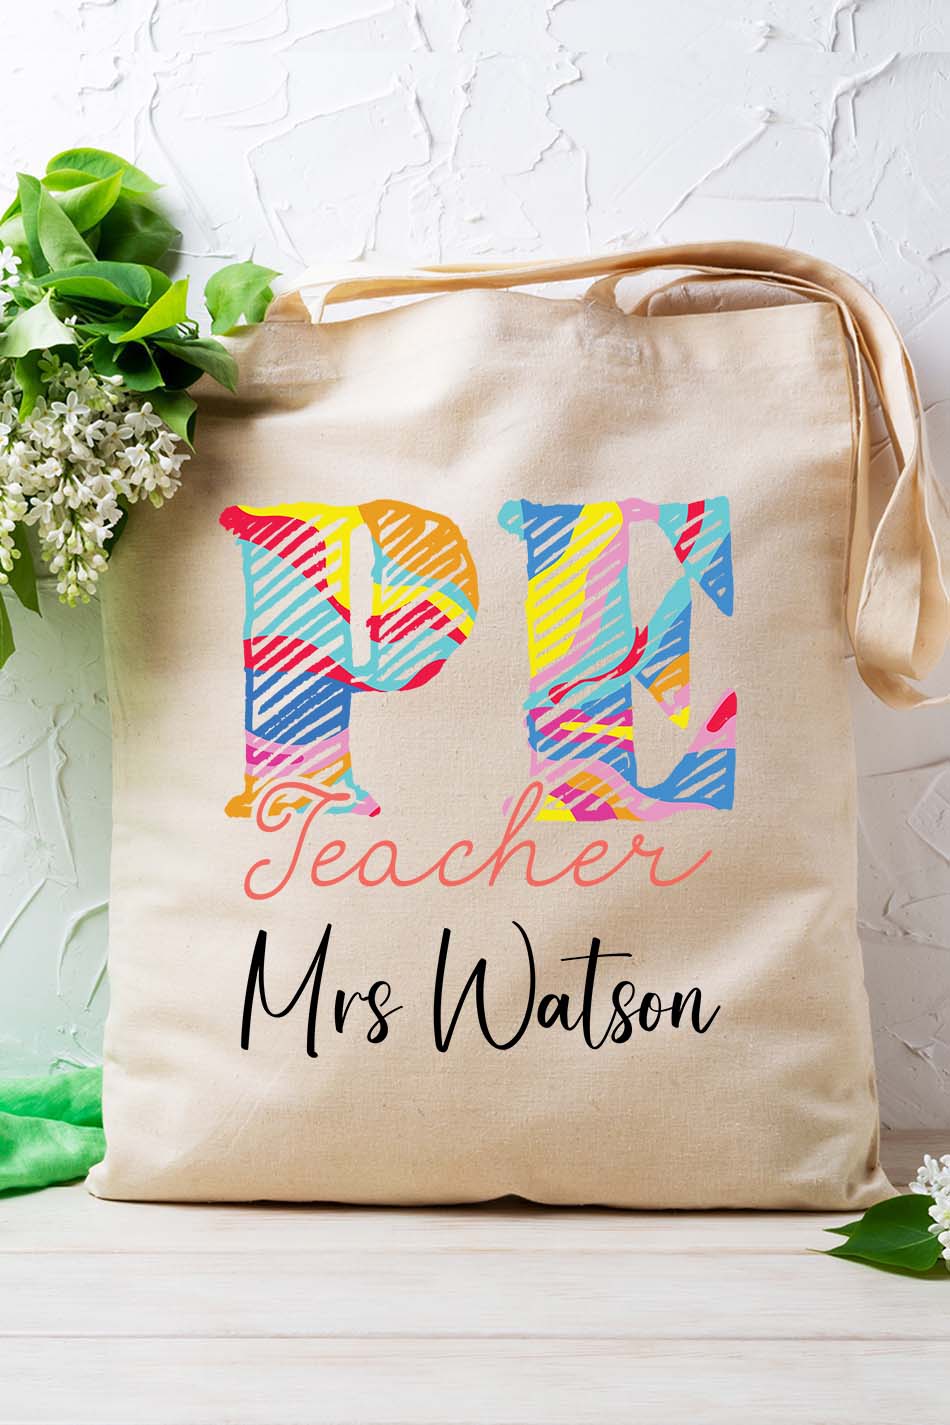 Custom PE Teacher Tote Bag